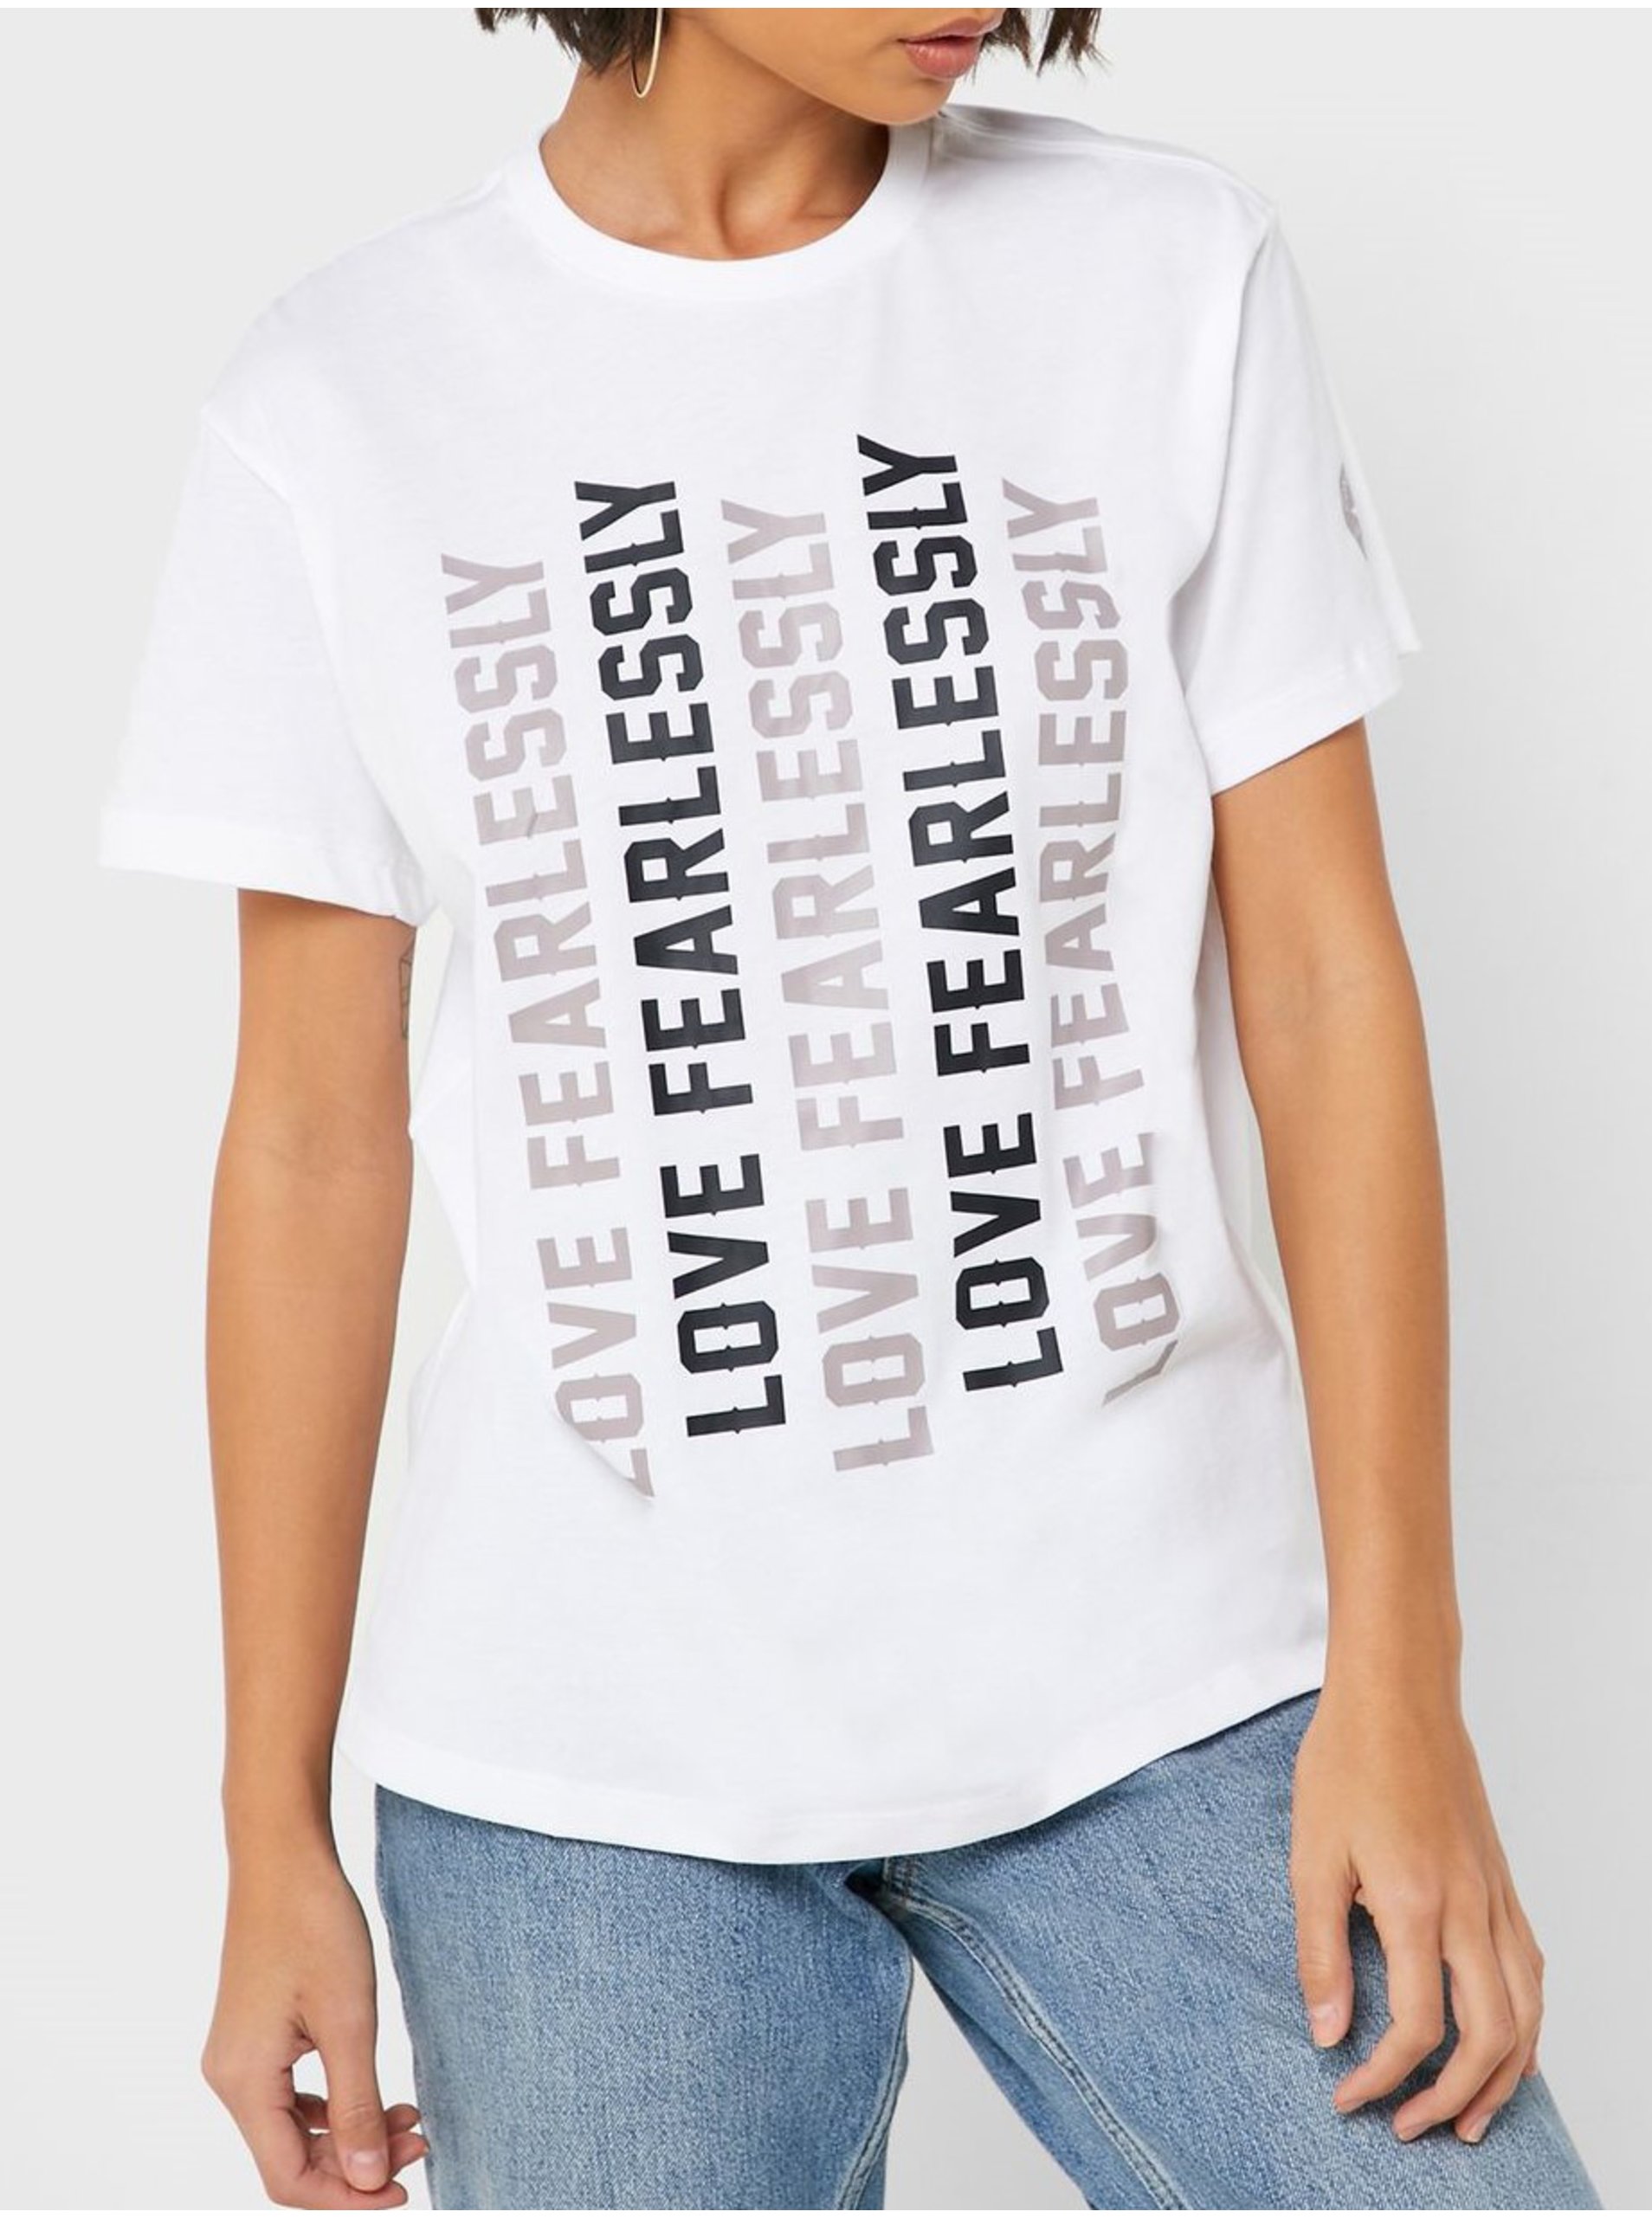 Lacno Converse biele tričko s nápismi